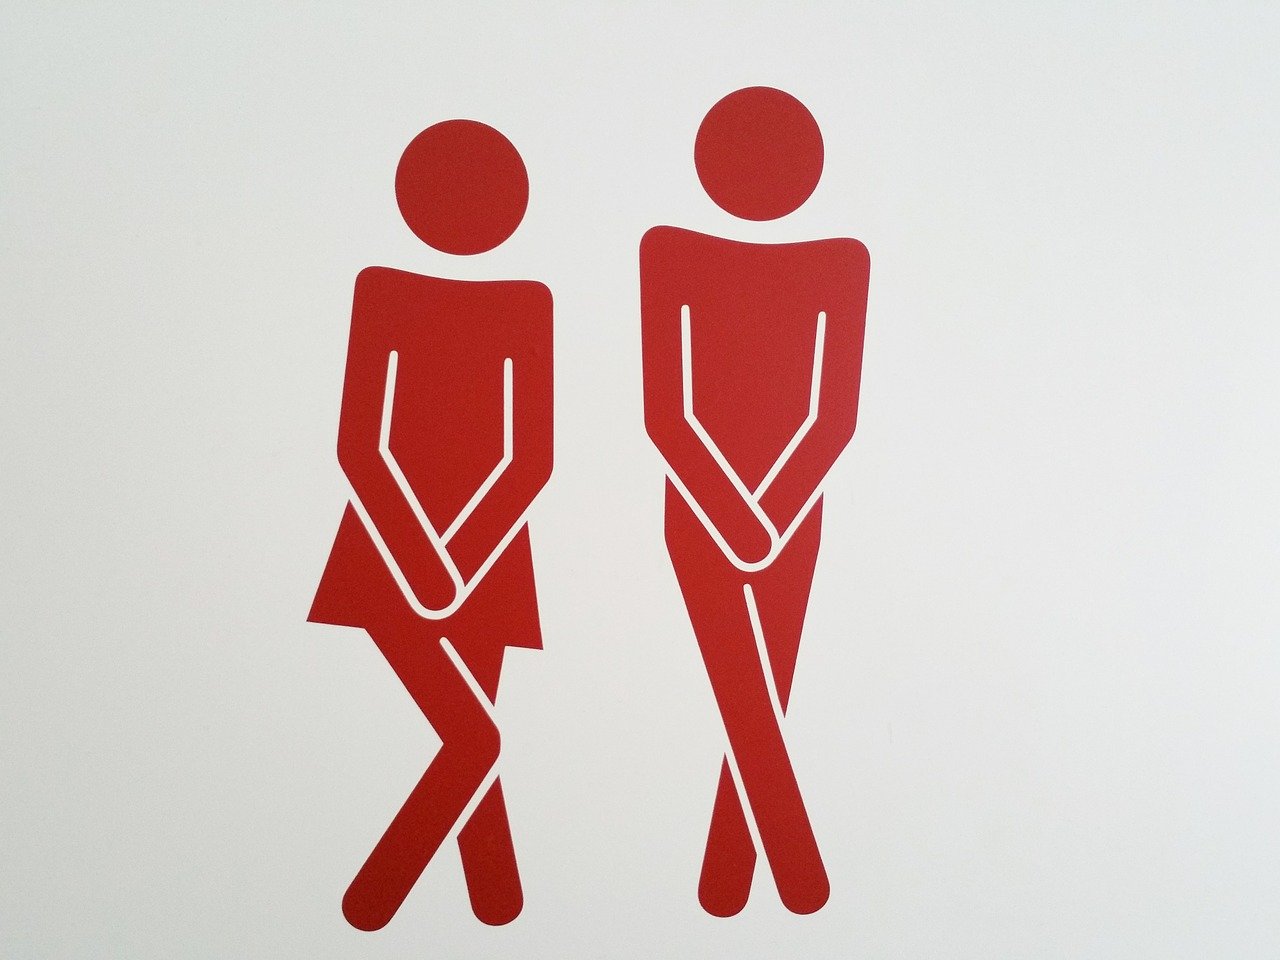 Panneaux sanitaires pour hommes et femmes, solutions efficaces face à l'incontinence urinaire.